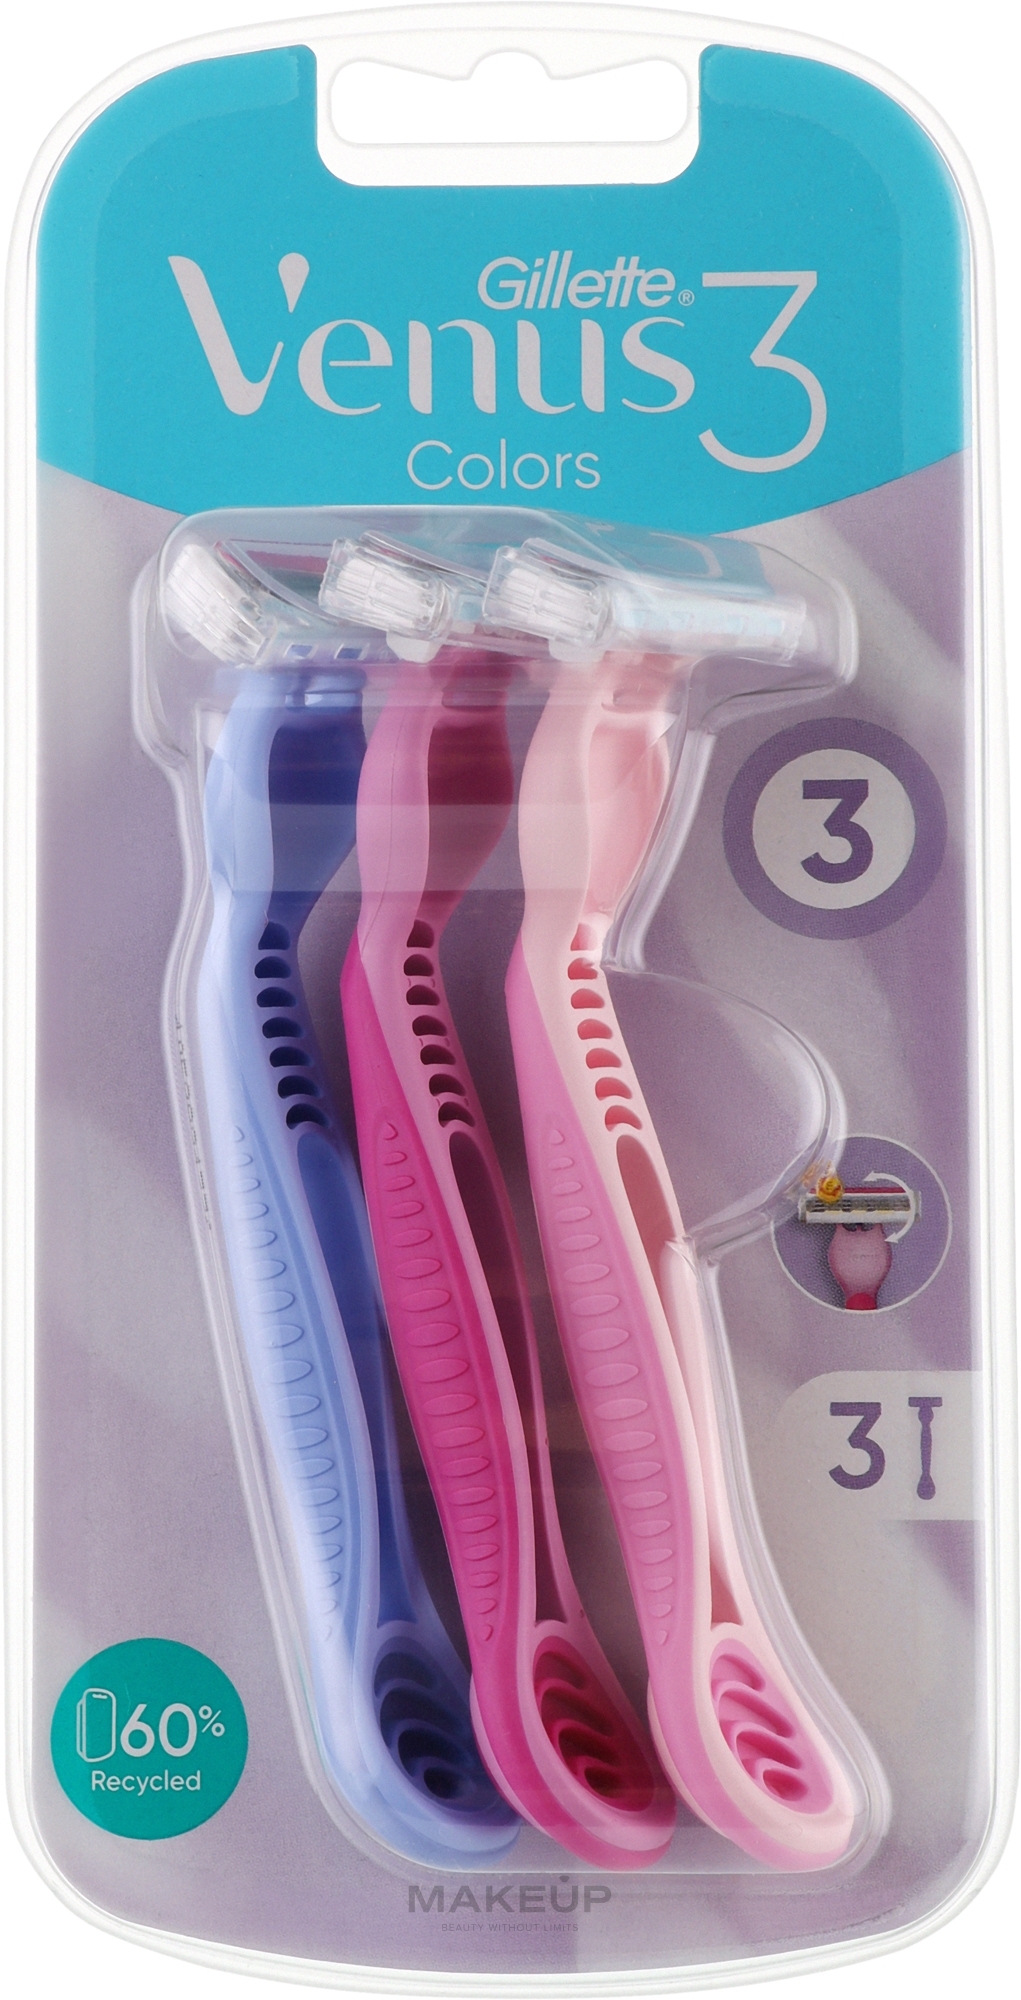 Jednorazowe maszynki do golenia, 3 sztuki - Gillette Venus Simply 3 Plus Colors — Zdjęcie 3 szt.